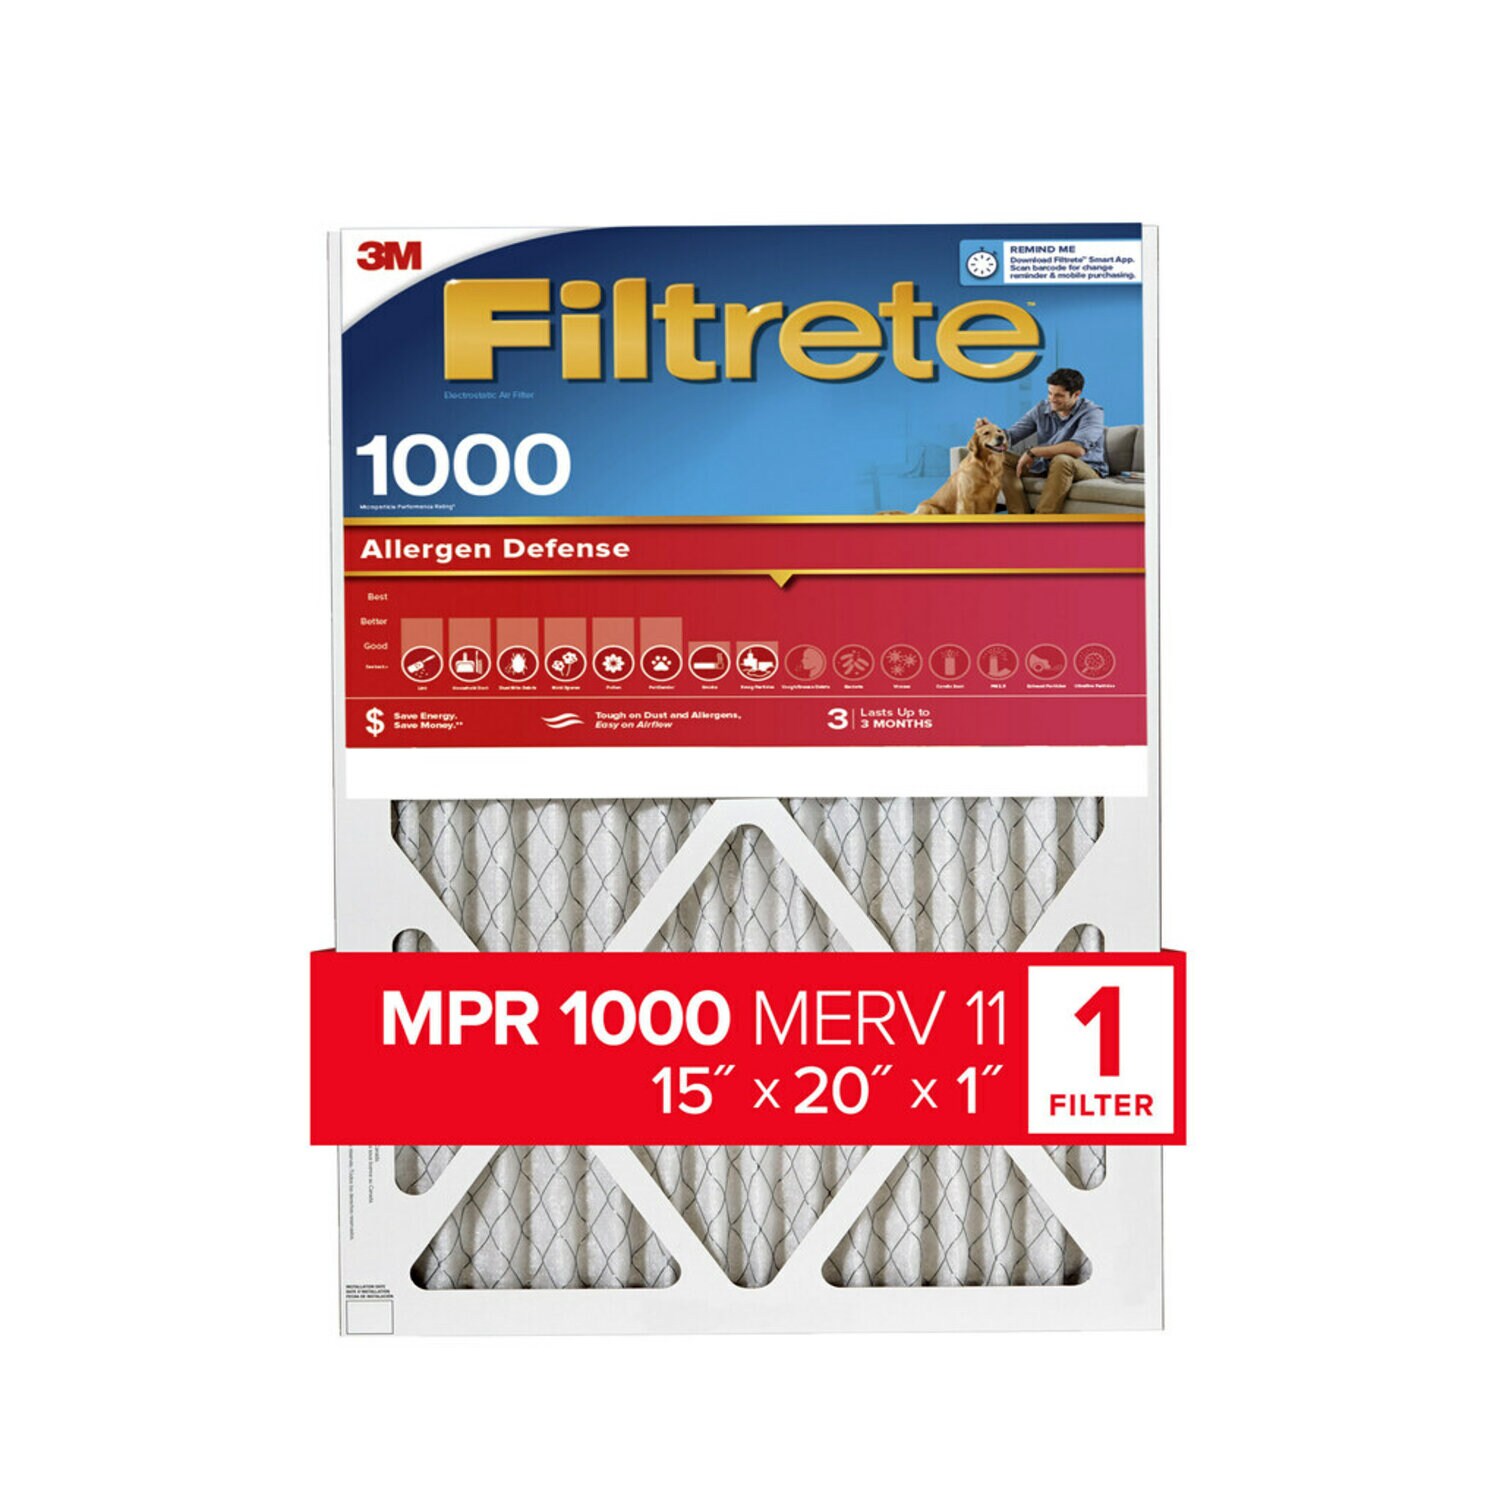 7100188272 - Filtrete Allergen Defense Filter, 1000 MPR, 9806-4, 15 in x 20 in x 1
in (38,1 cm x 50,8 cm x 2,5 cm)